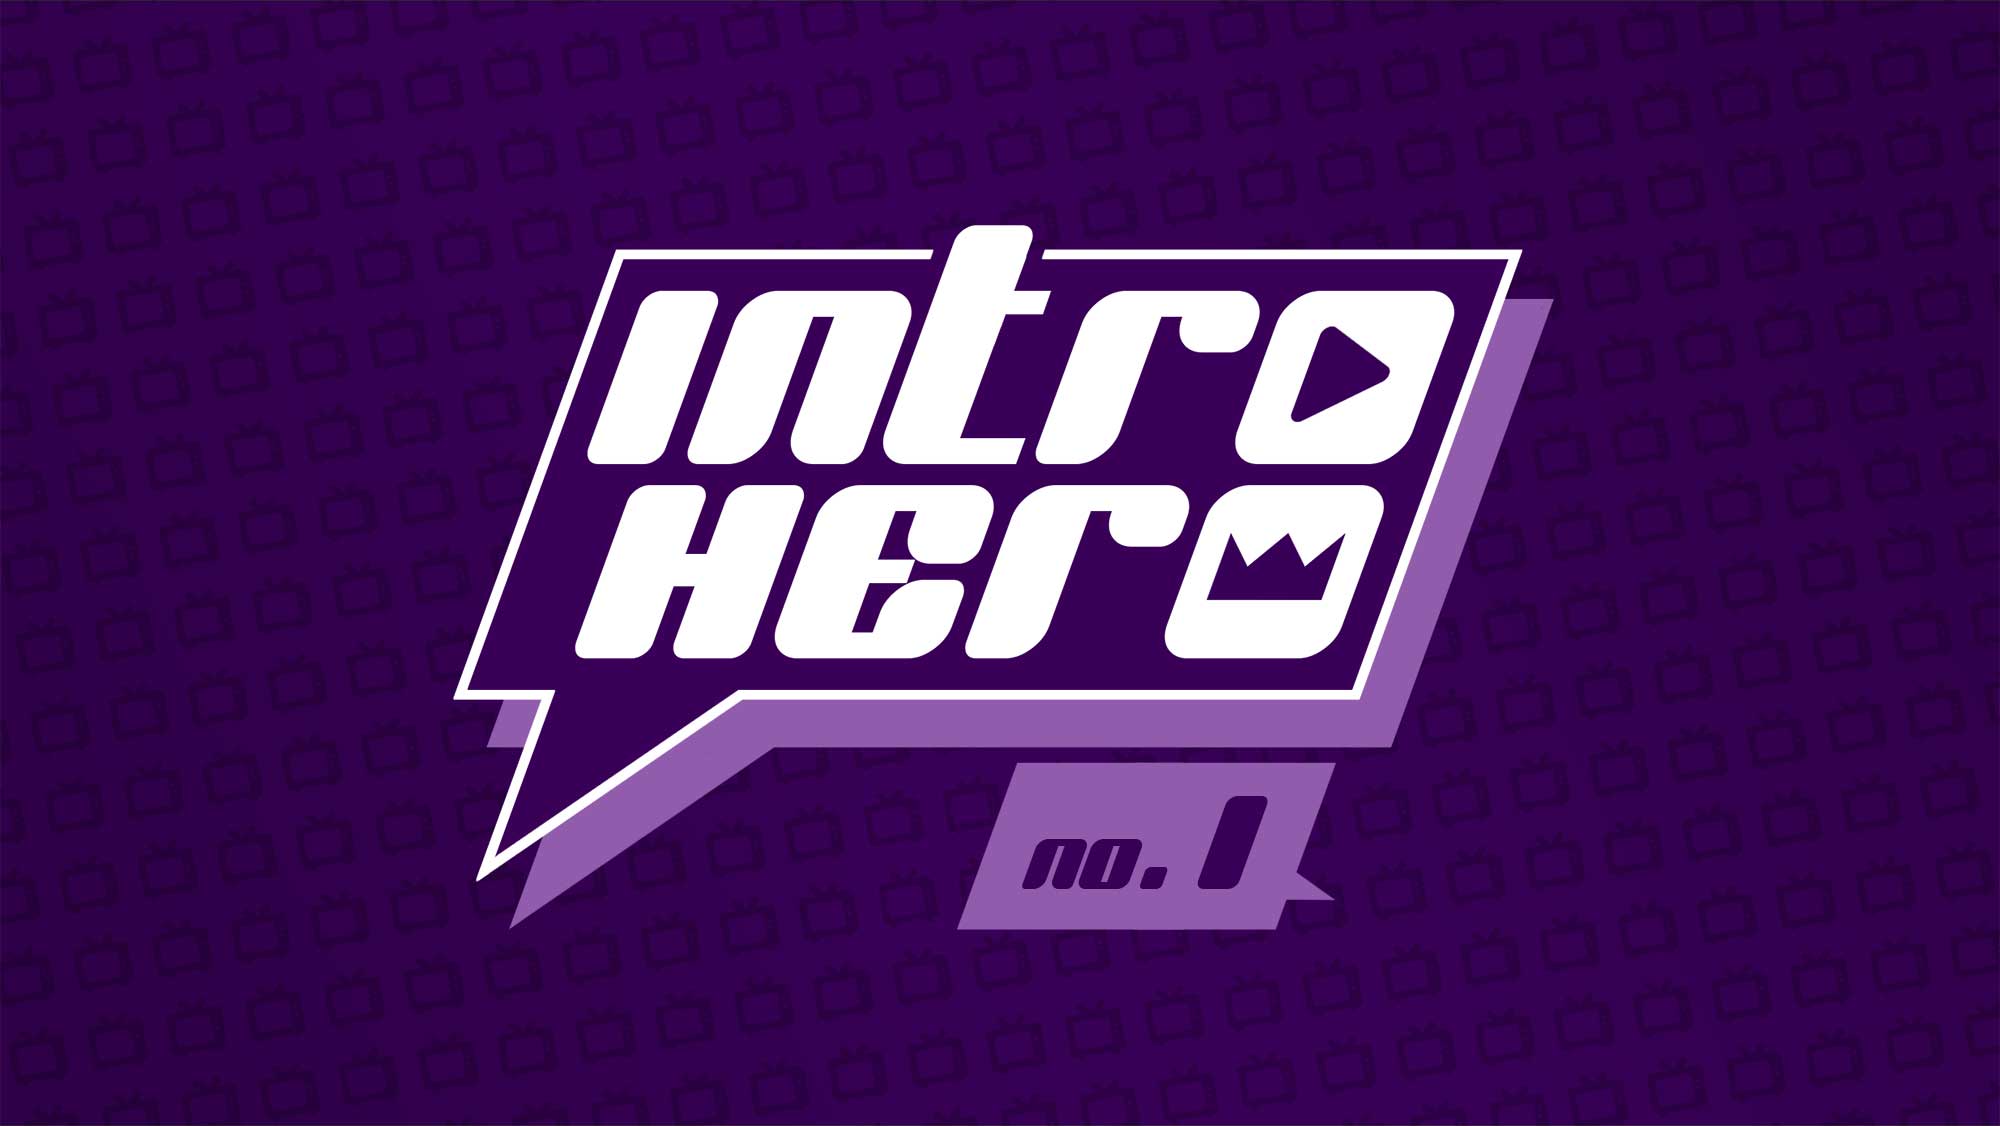 „Intro Hero“ No. 1: Errate die nacherzählten Serien-Intros!